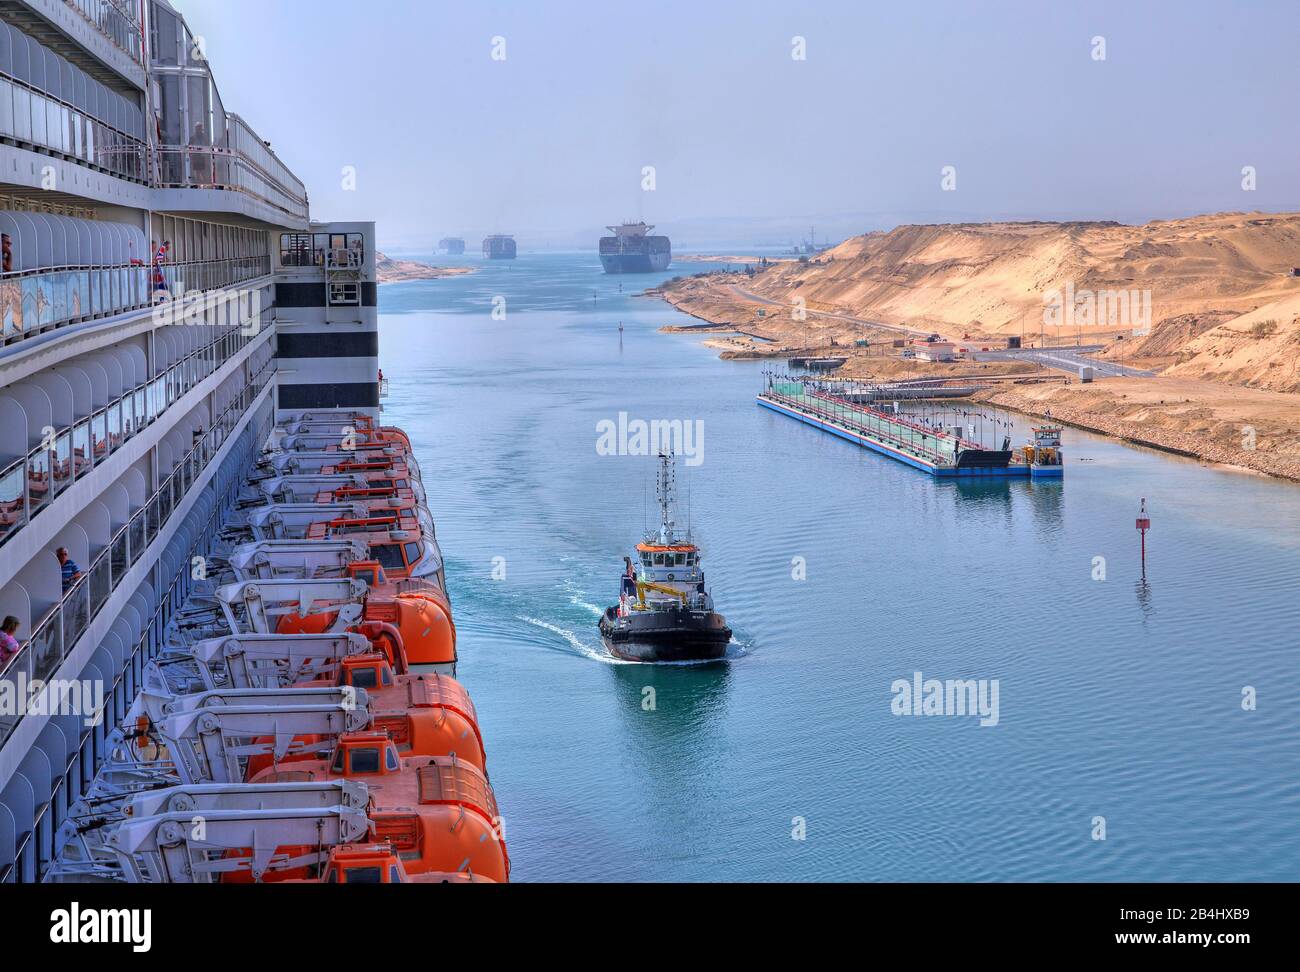 Vista laterale con ponte barca e balconi del transatlantico Liner Queen Mary 2 con convoglio nave nel canale di Suez (canale di Suez), Egitto Foto Stock